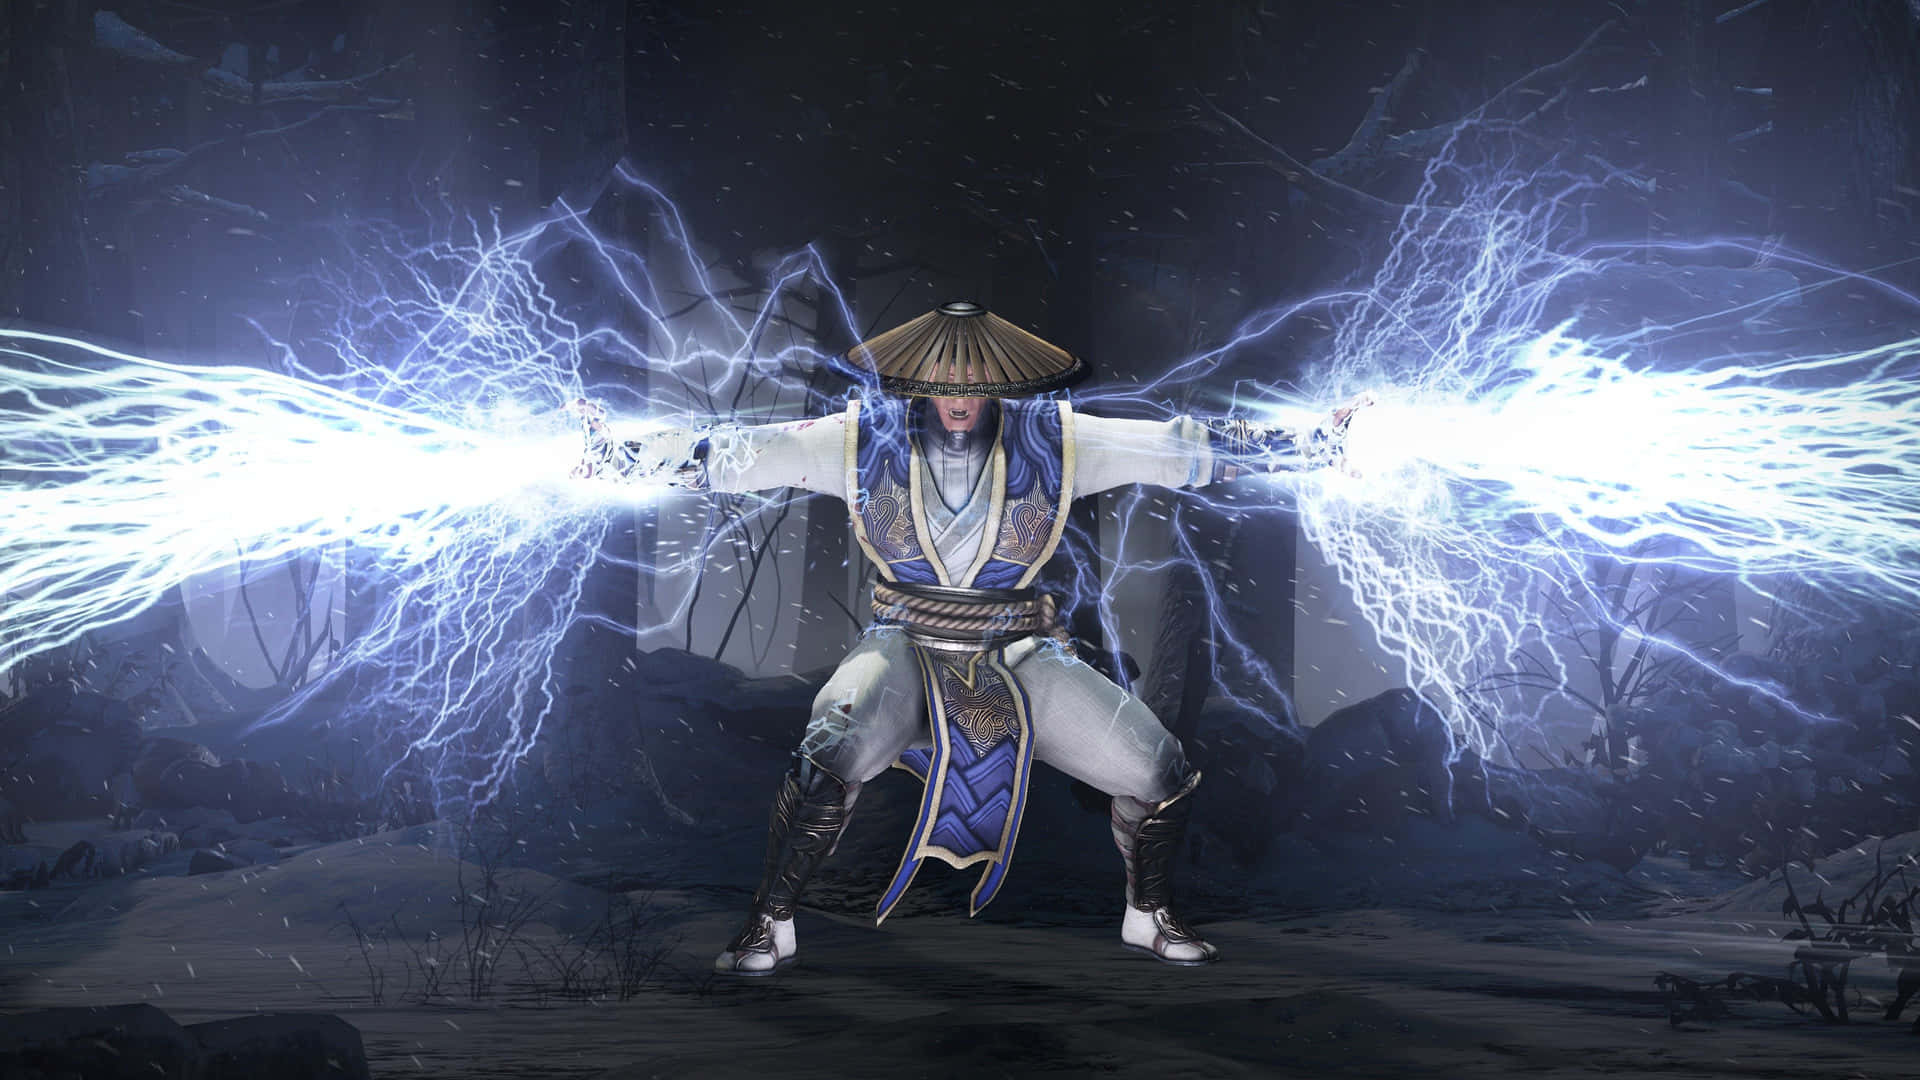 Electrifying Raiden in Mortal Kombat Wallpaper